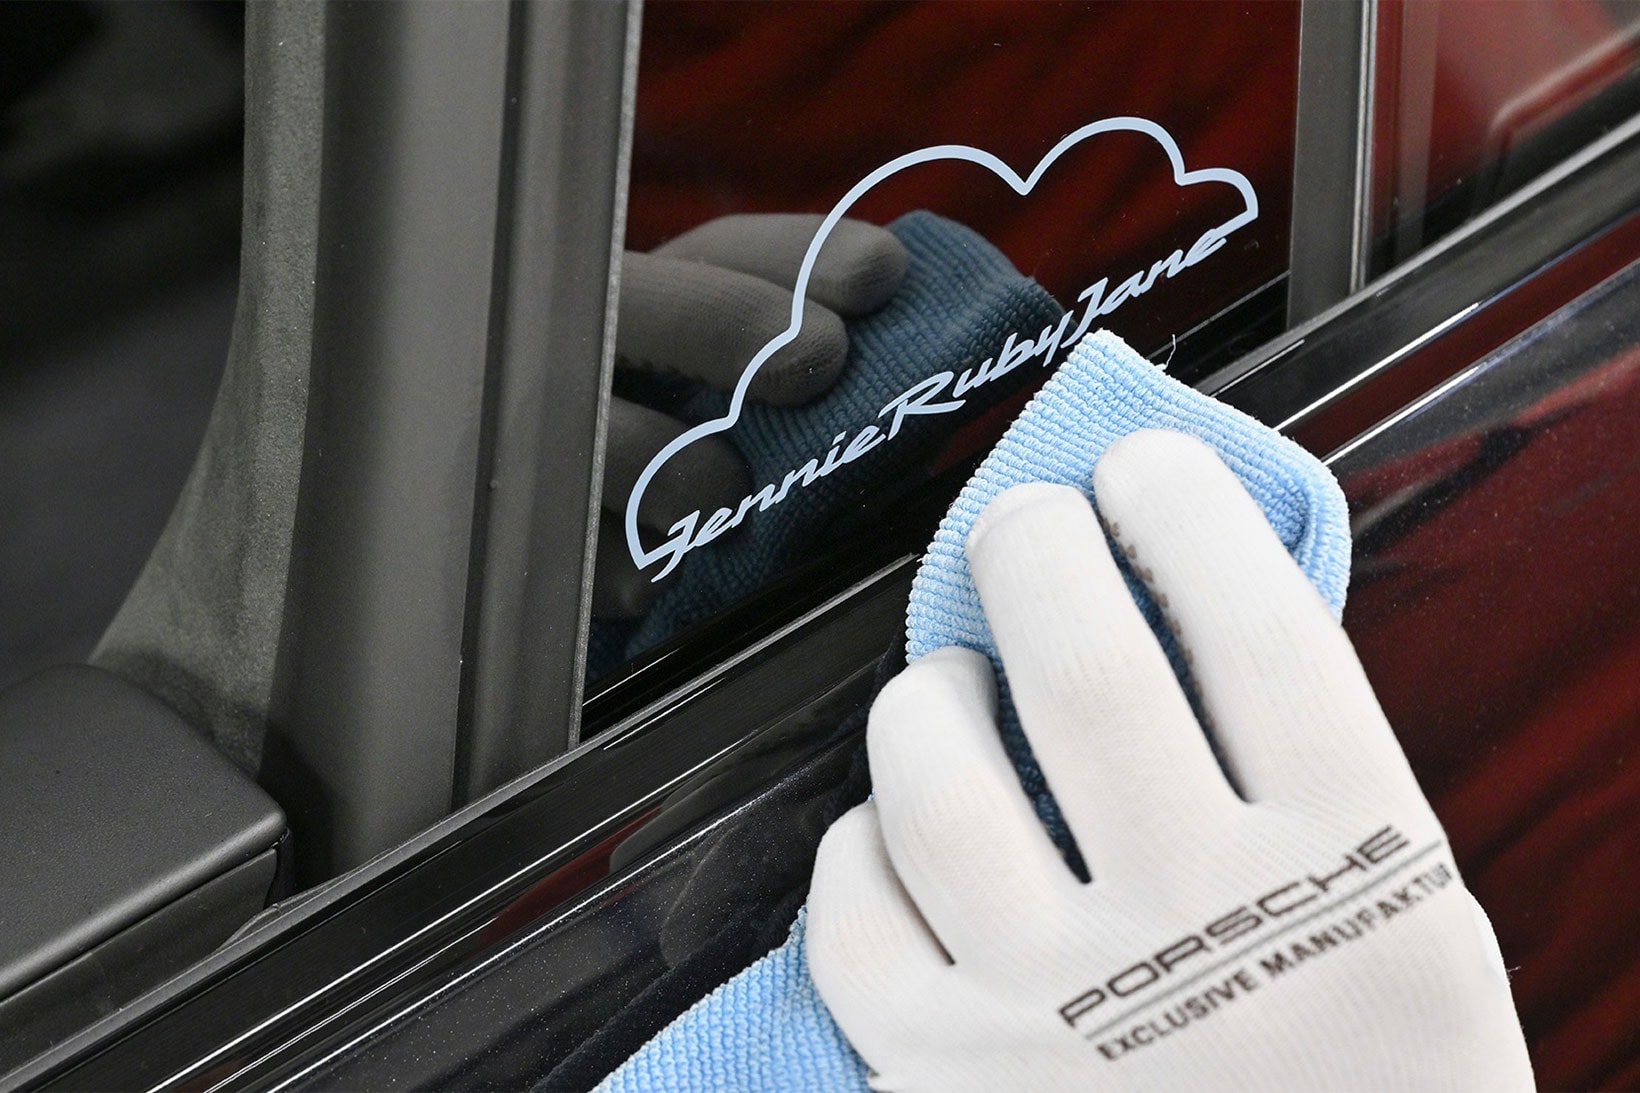 Jennie BLACKPINK Porsche Car Collaboration Taycan 4S Cross Turismo Ruby Jane Sonderwunsch Images Info